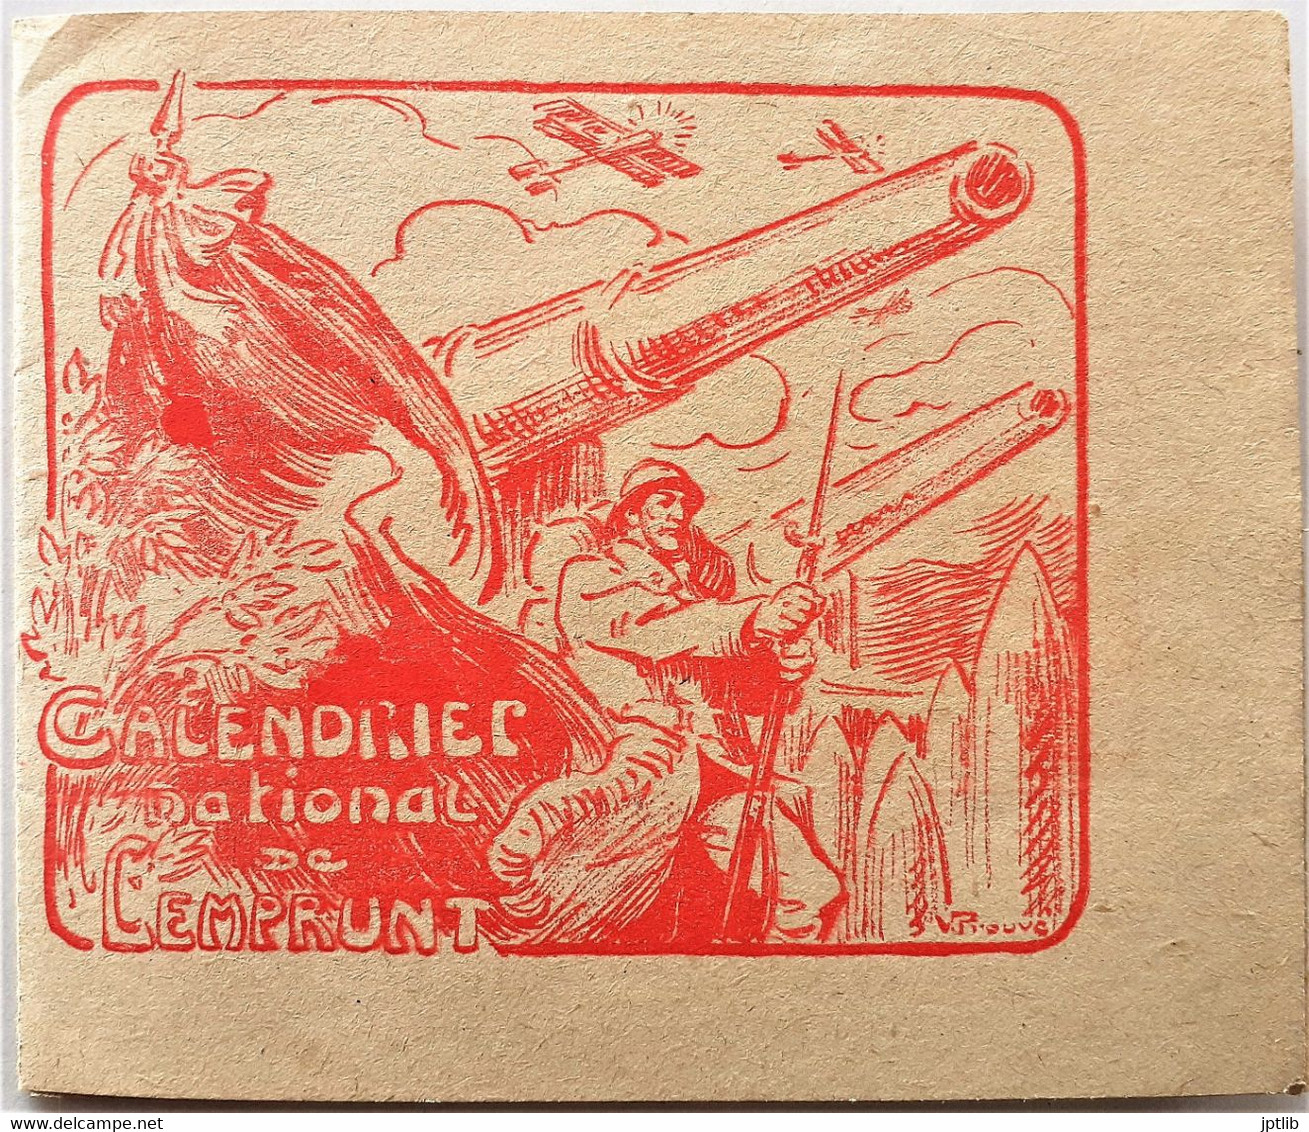 Calendrier / PROUVÉ (Victor)(1858-1943) / Emprunt De La Défense Nationale / 1918. - Petit Format : 1901-20